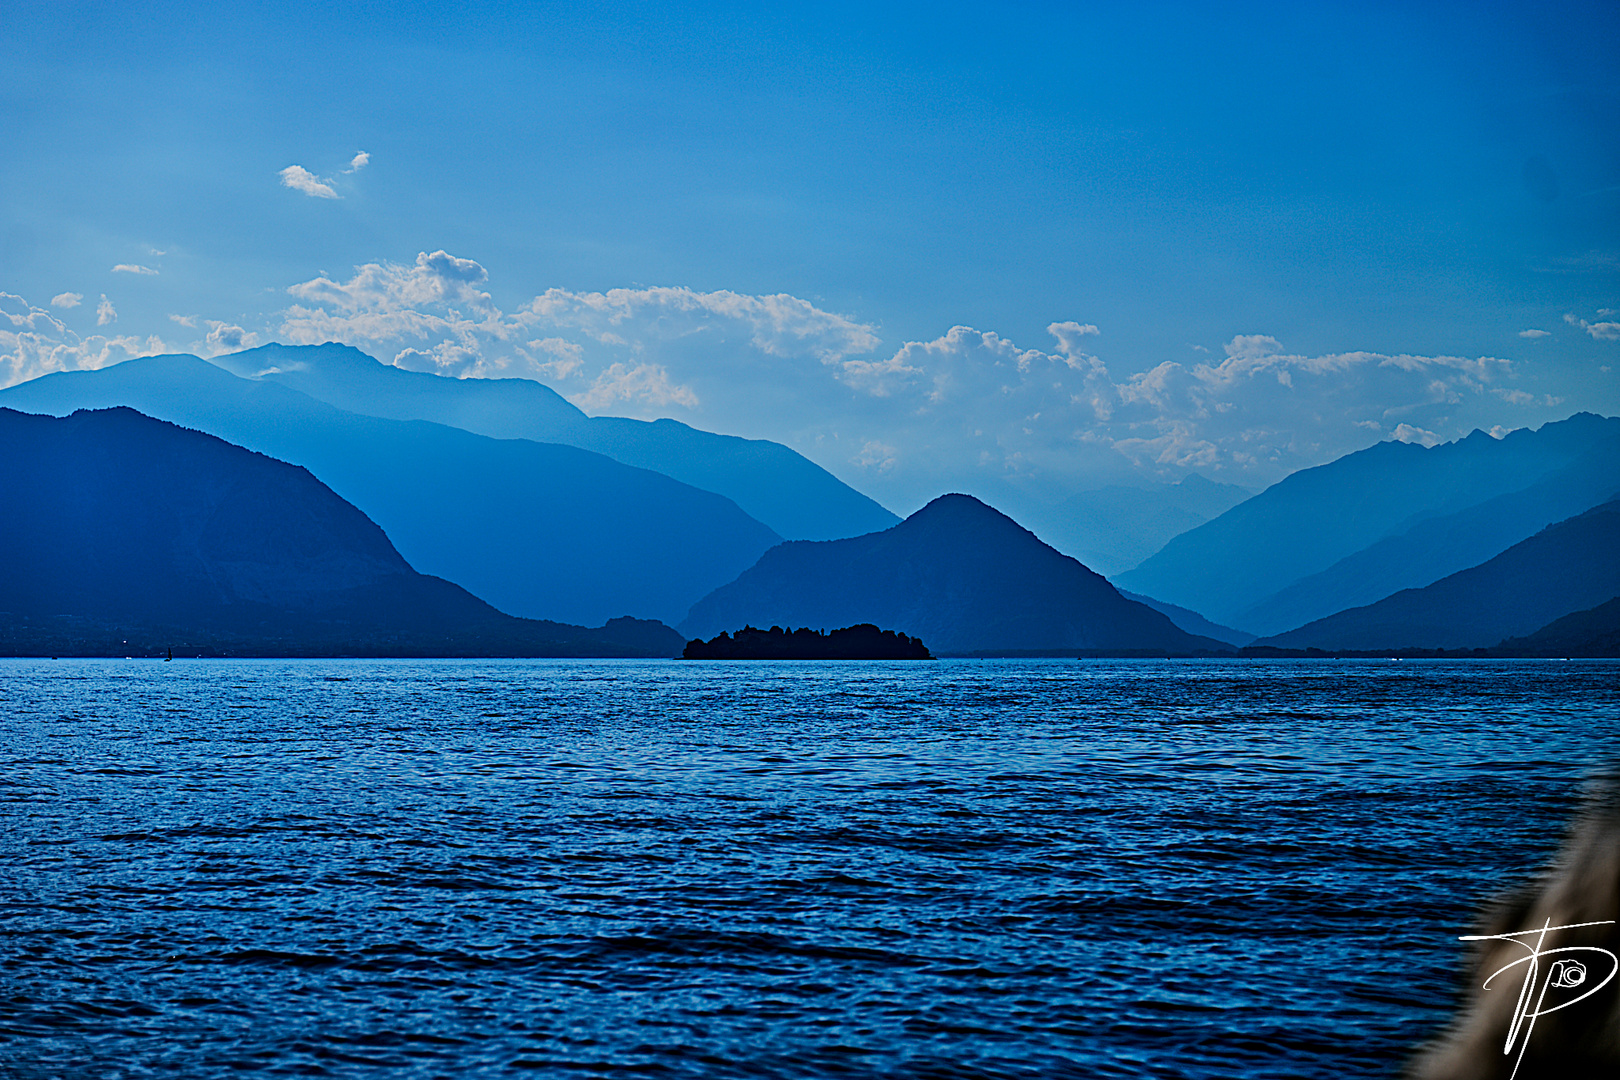 L'azzurro sul Lago Maggiore